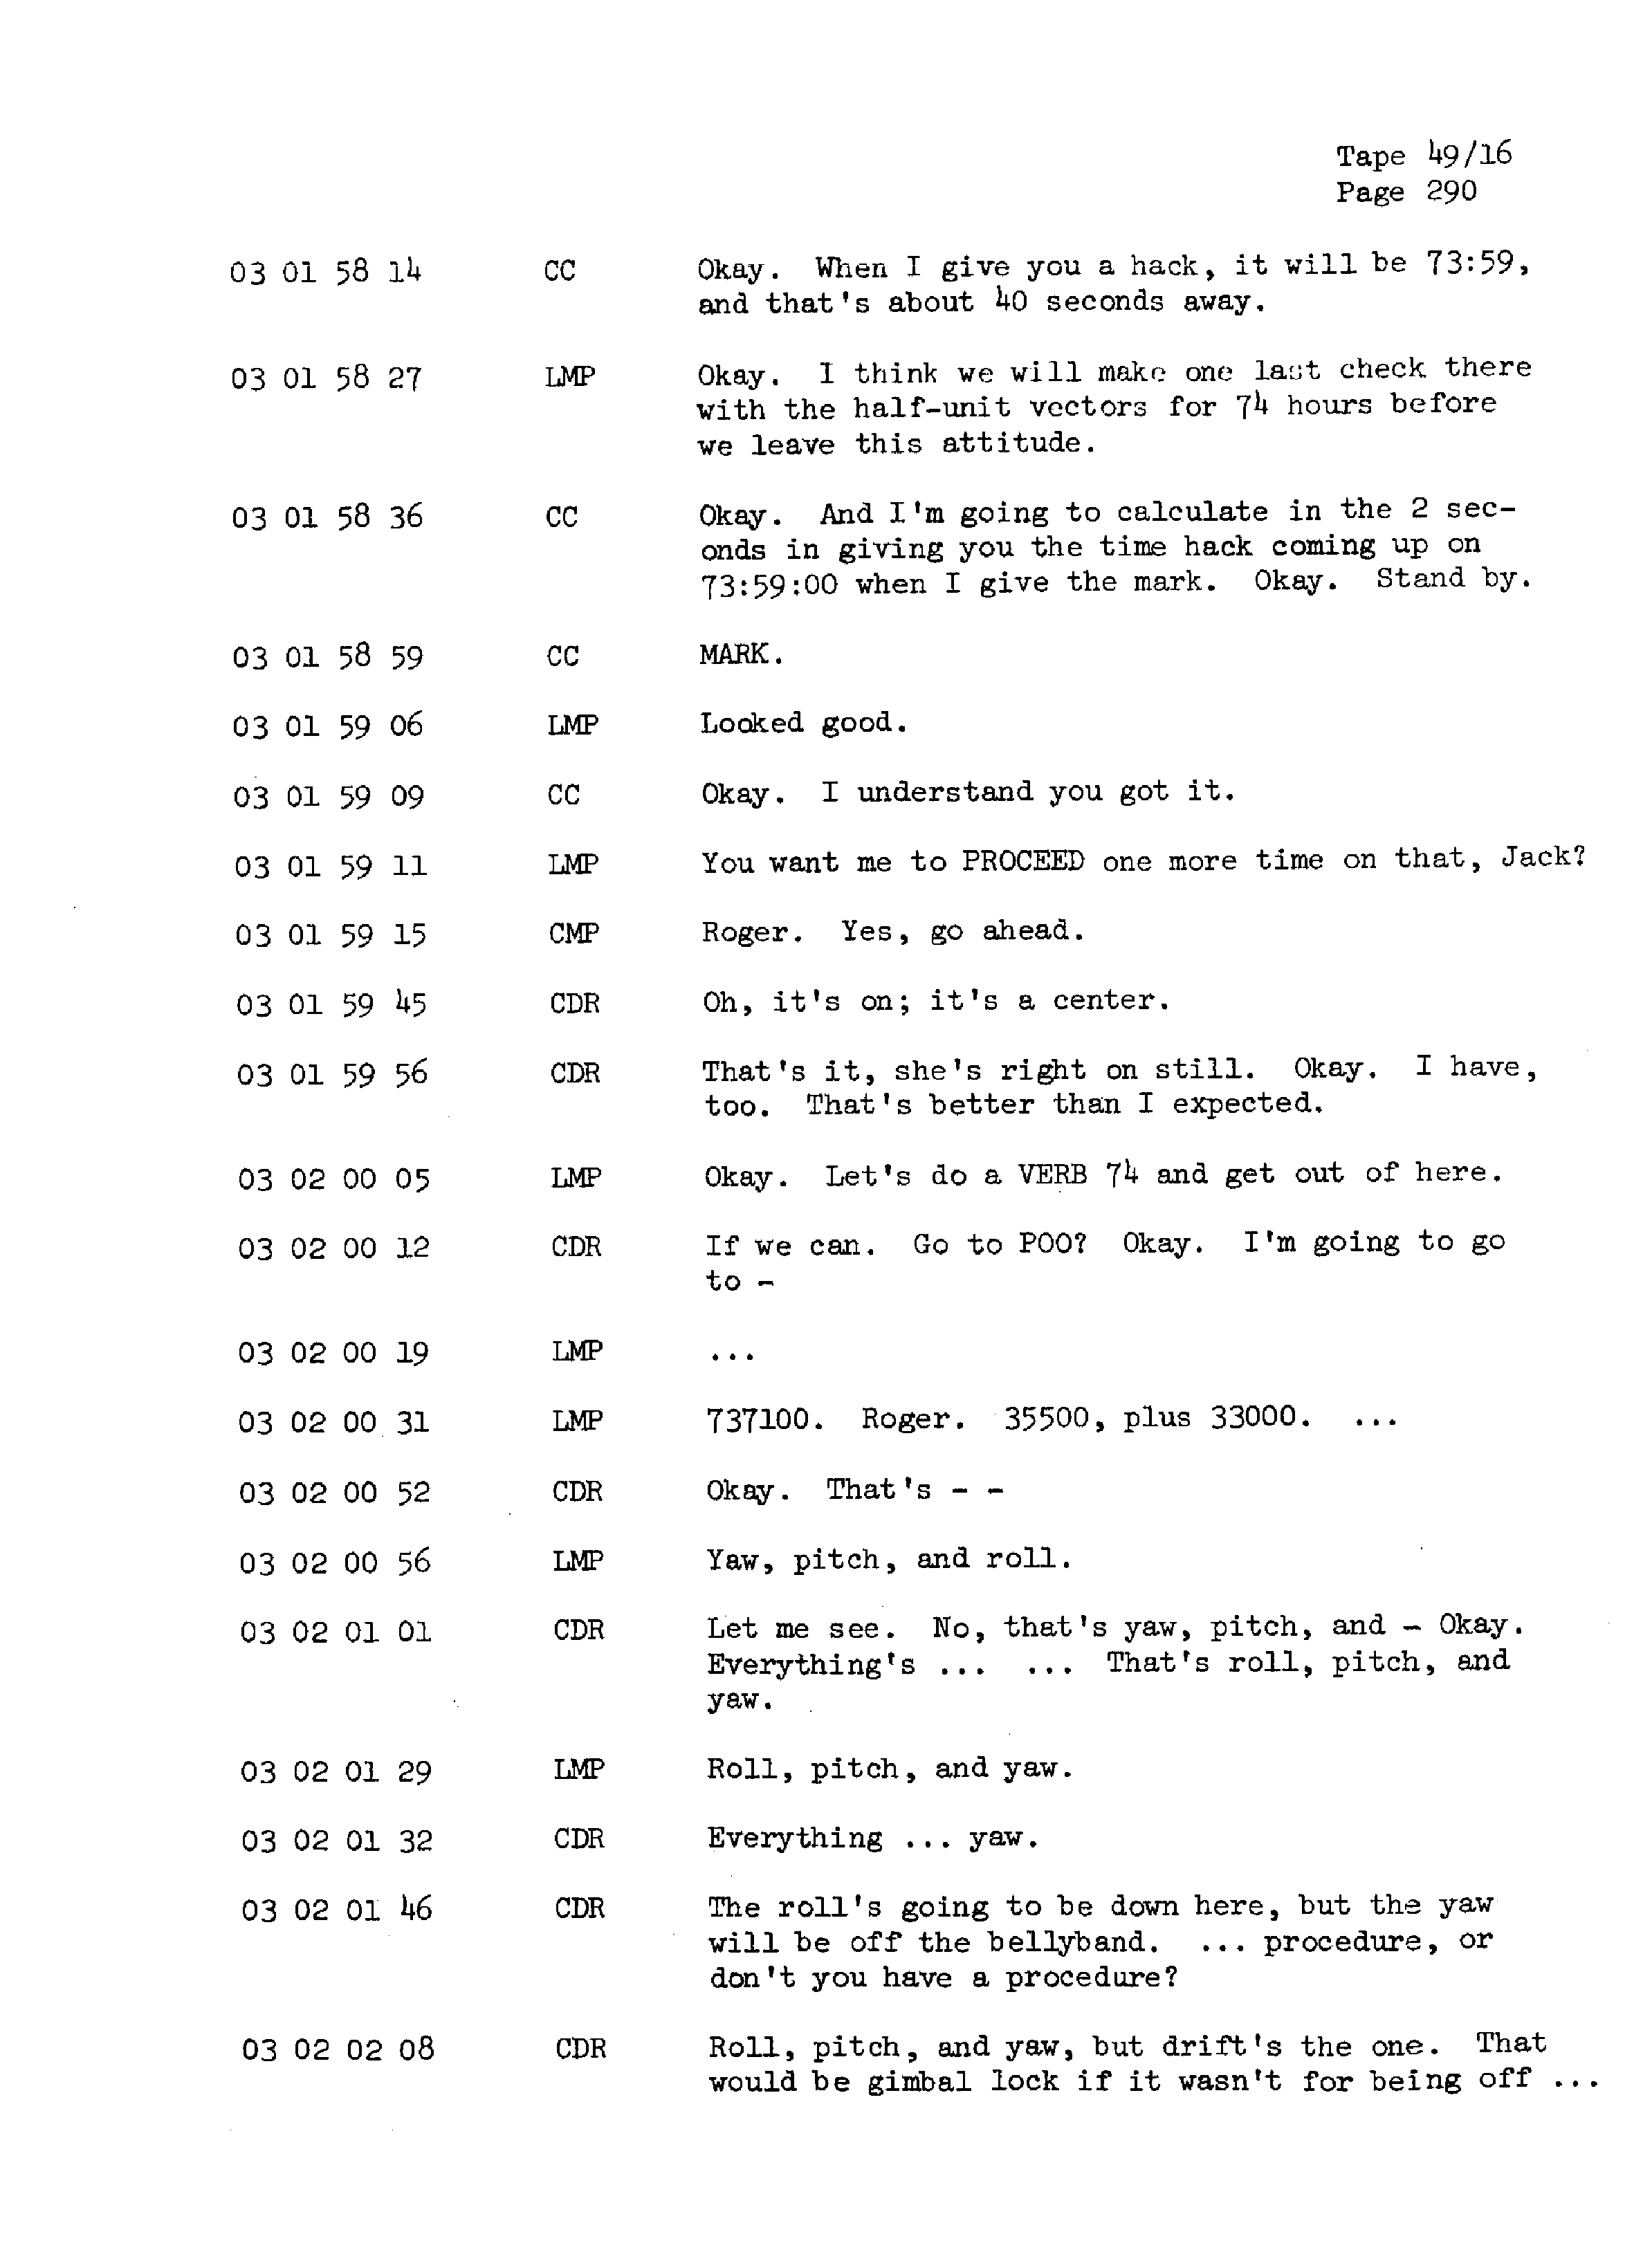 Page 297 of Apollo 13’s original transcript